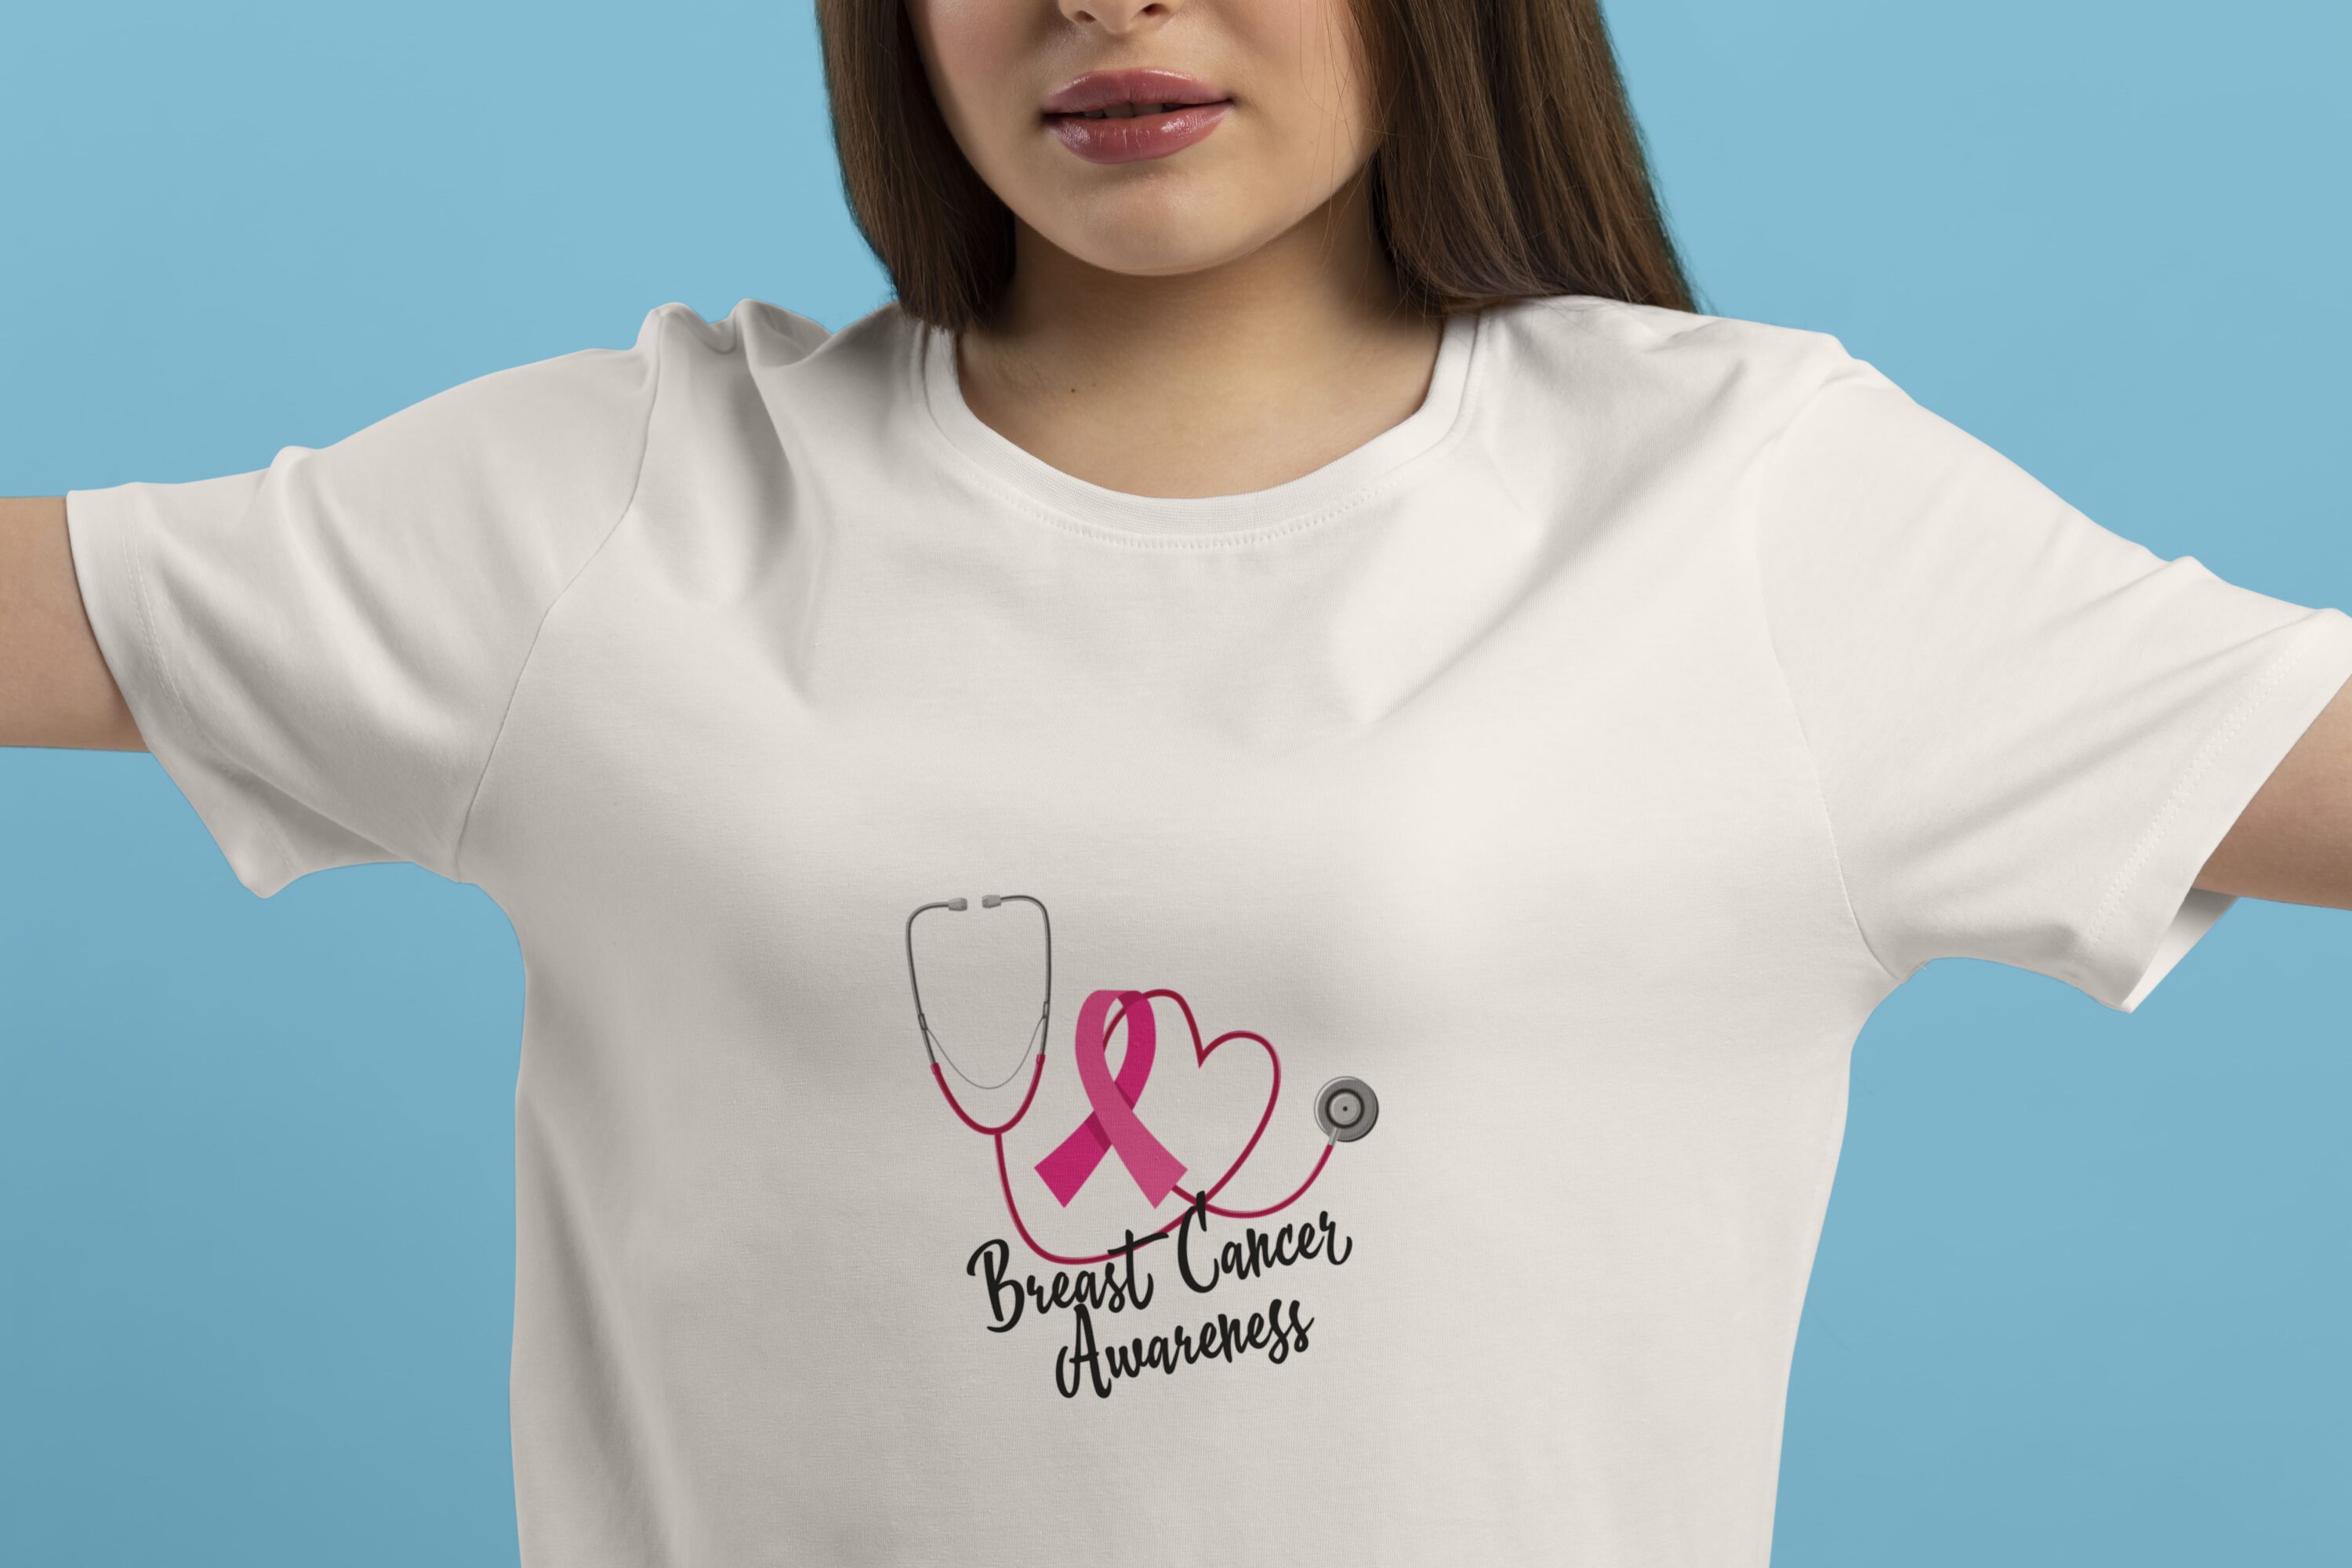 Full medicine illustration for support breast cancer.